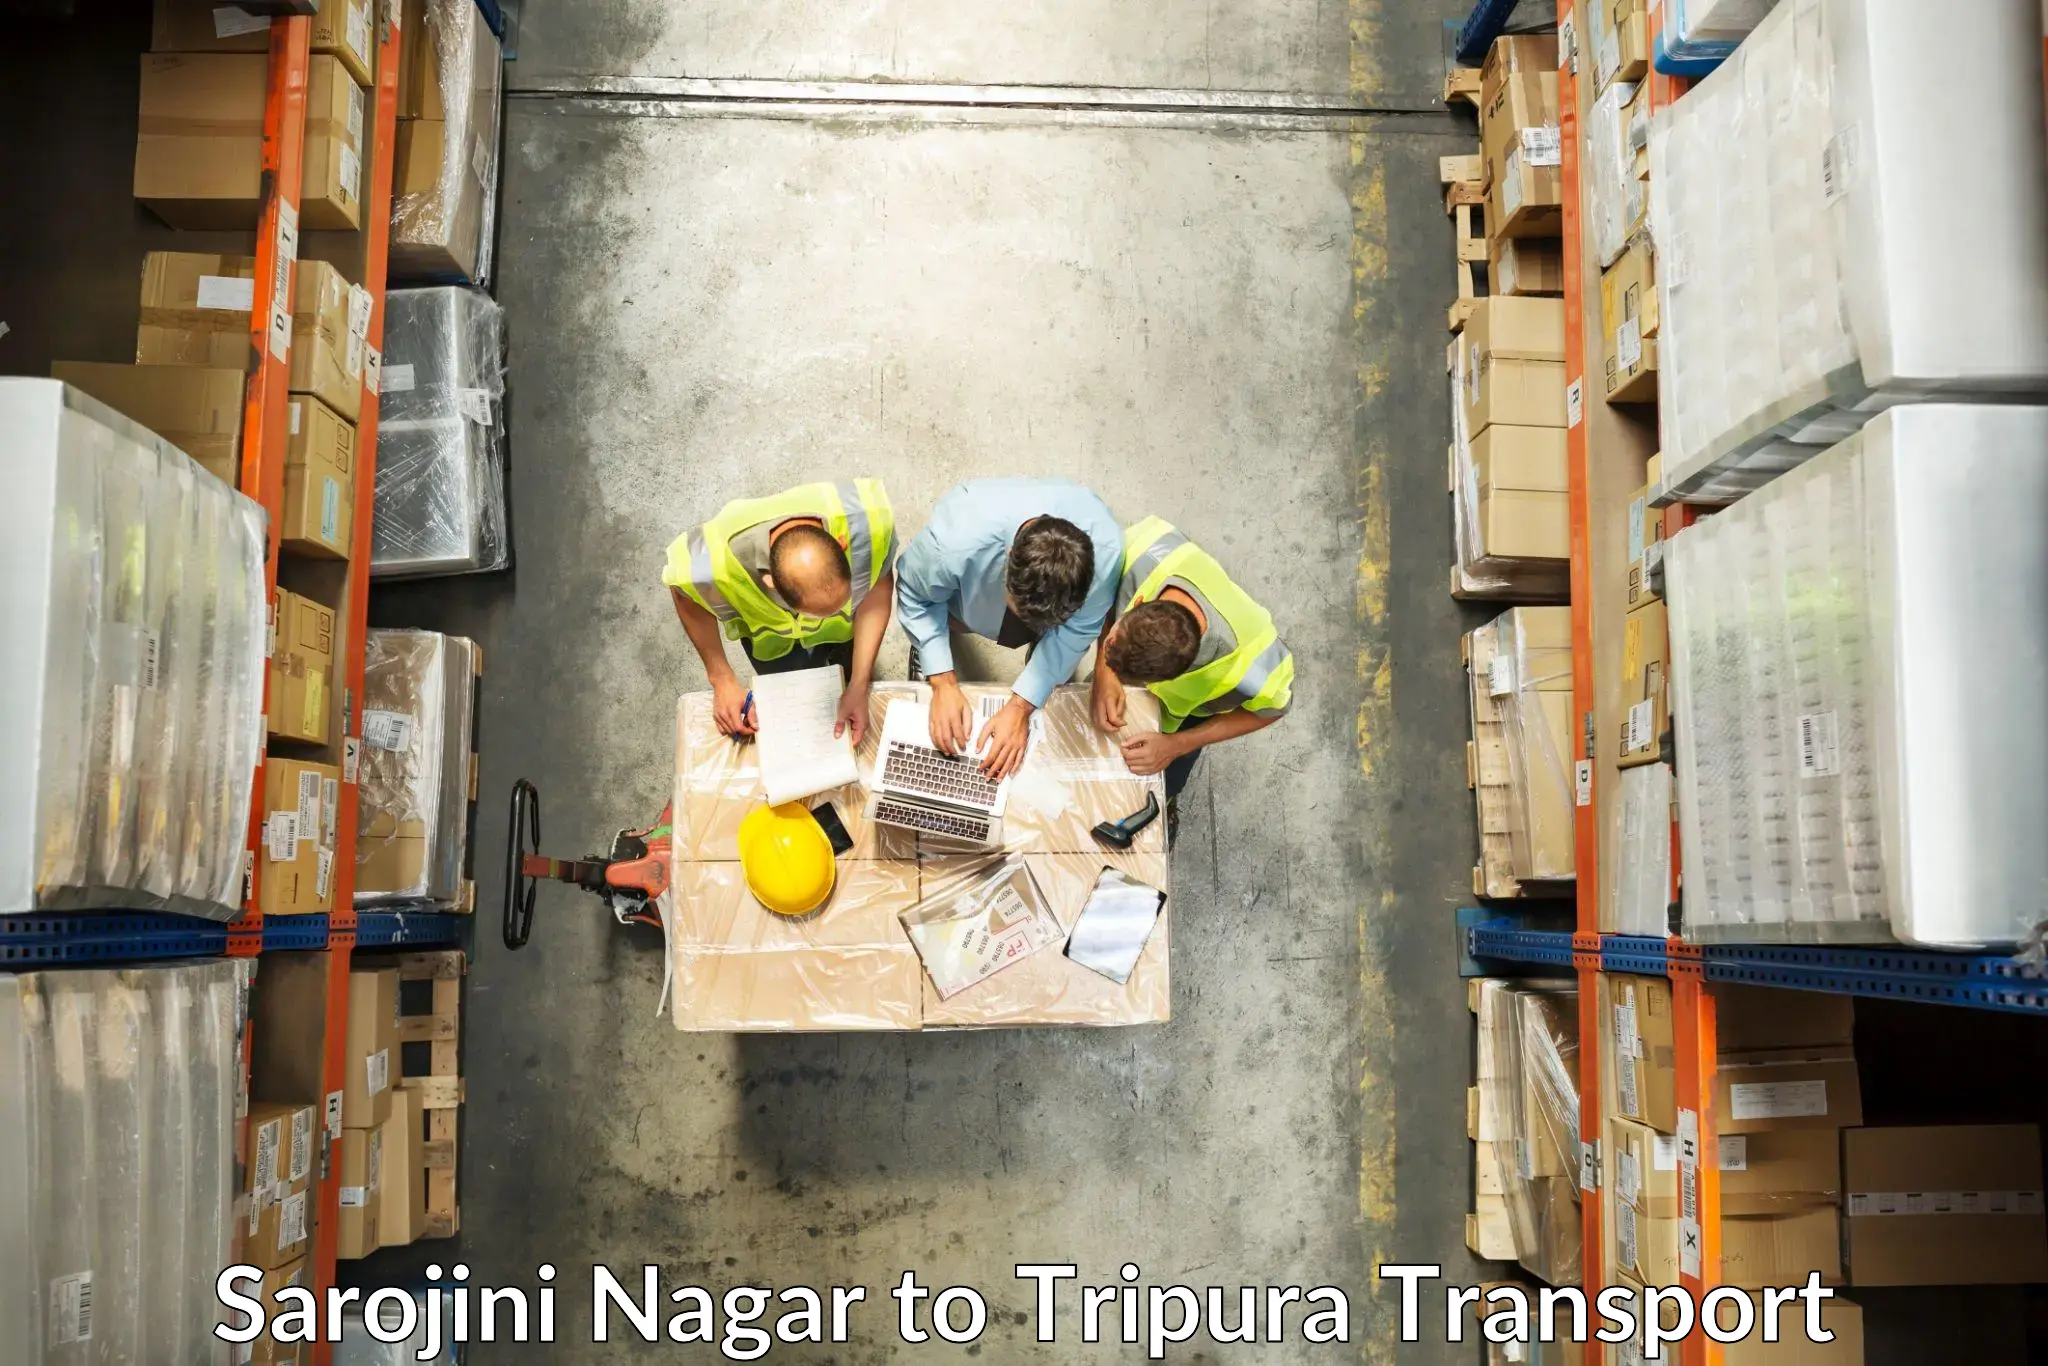 Container transport service Sarojini Nagar to Amarpur